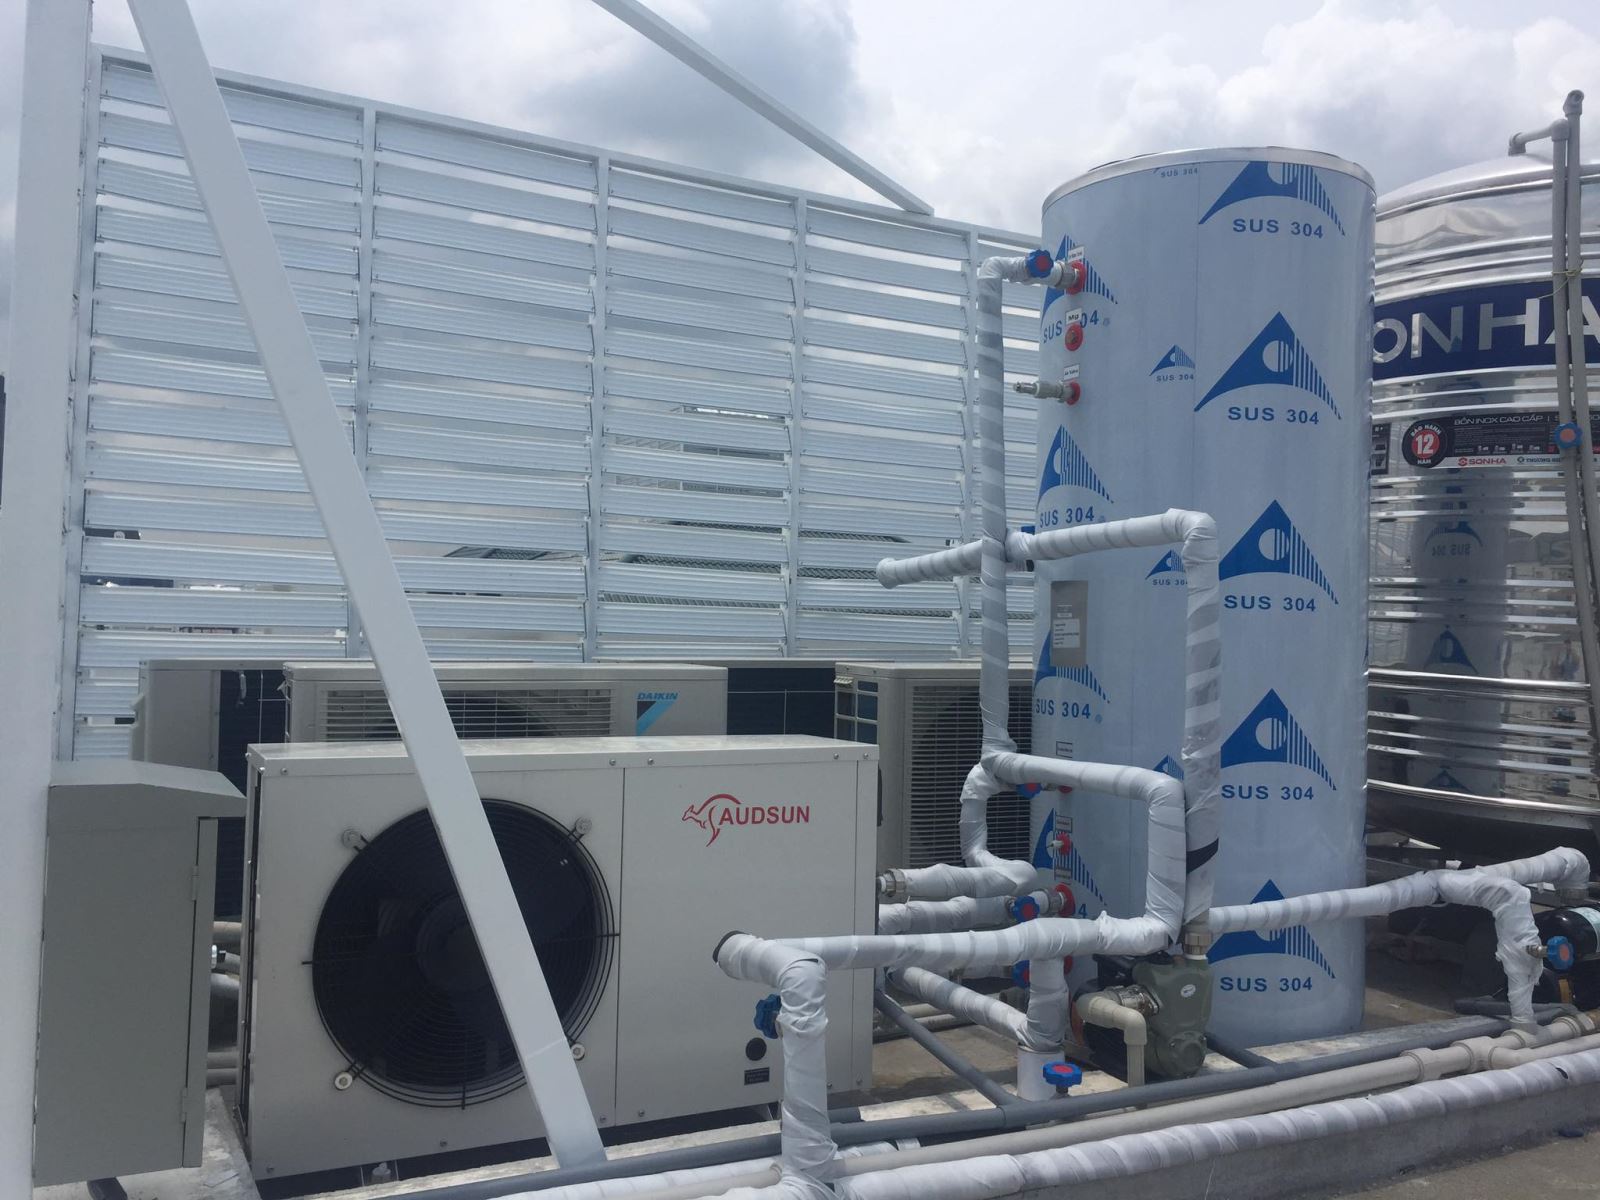 Tư vấn-  lắp đặt hệ thống máy nước nóng trung tâm Heat Pump cho các dự án công trình xây dựng tại Quảng Ninh - Ảnh 2